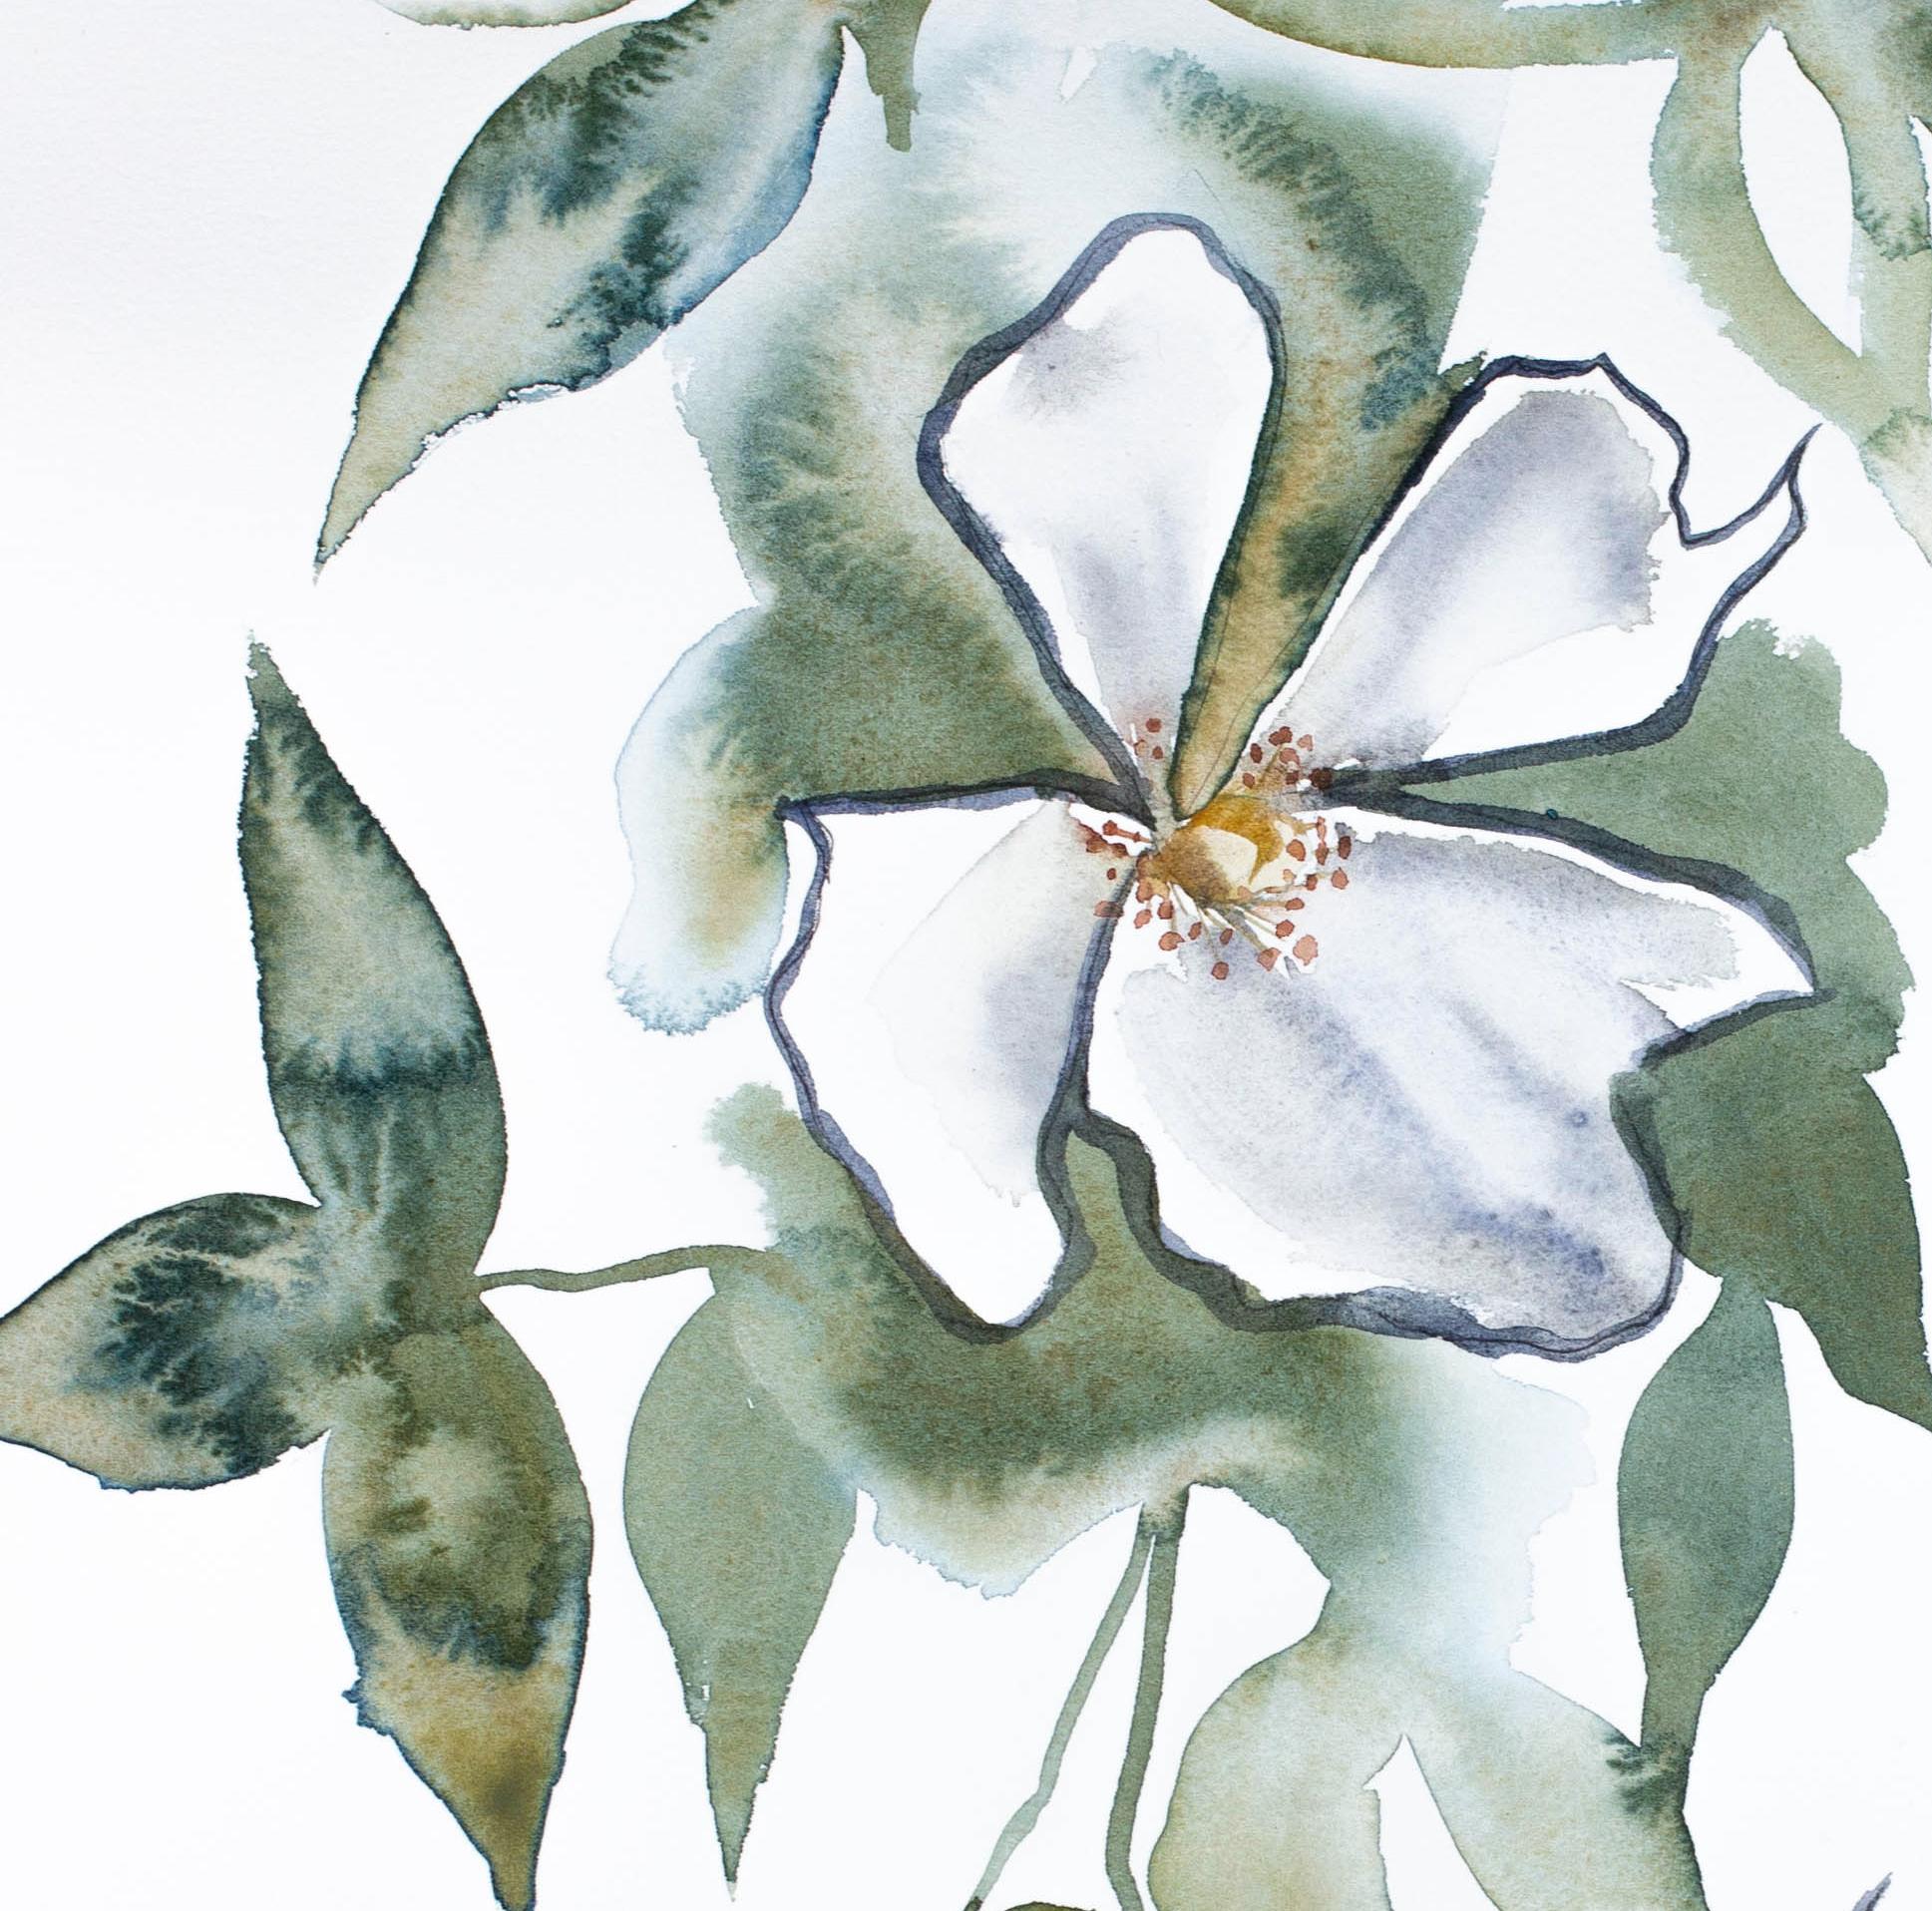 Kirschblüte Nr. 13, Original Minimalistische Impressionistische Nature Stillleben Studie, 2019
20